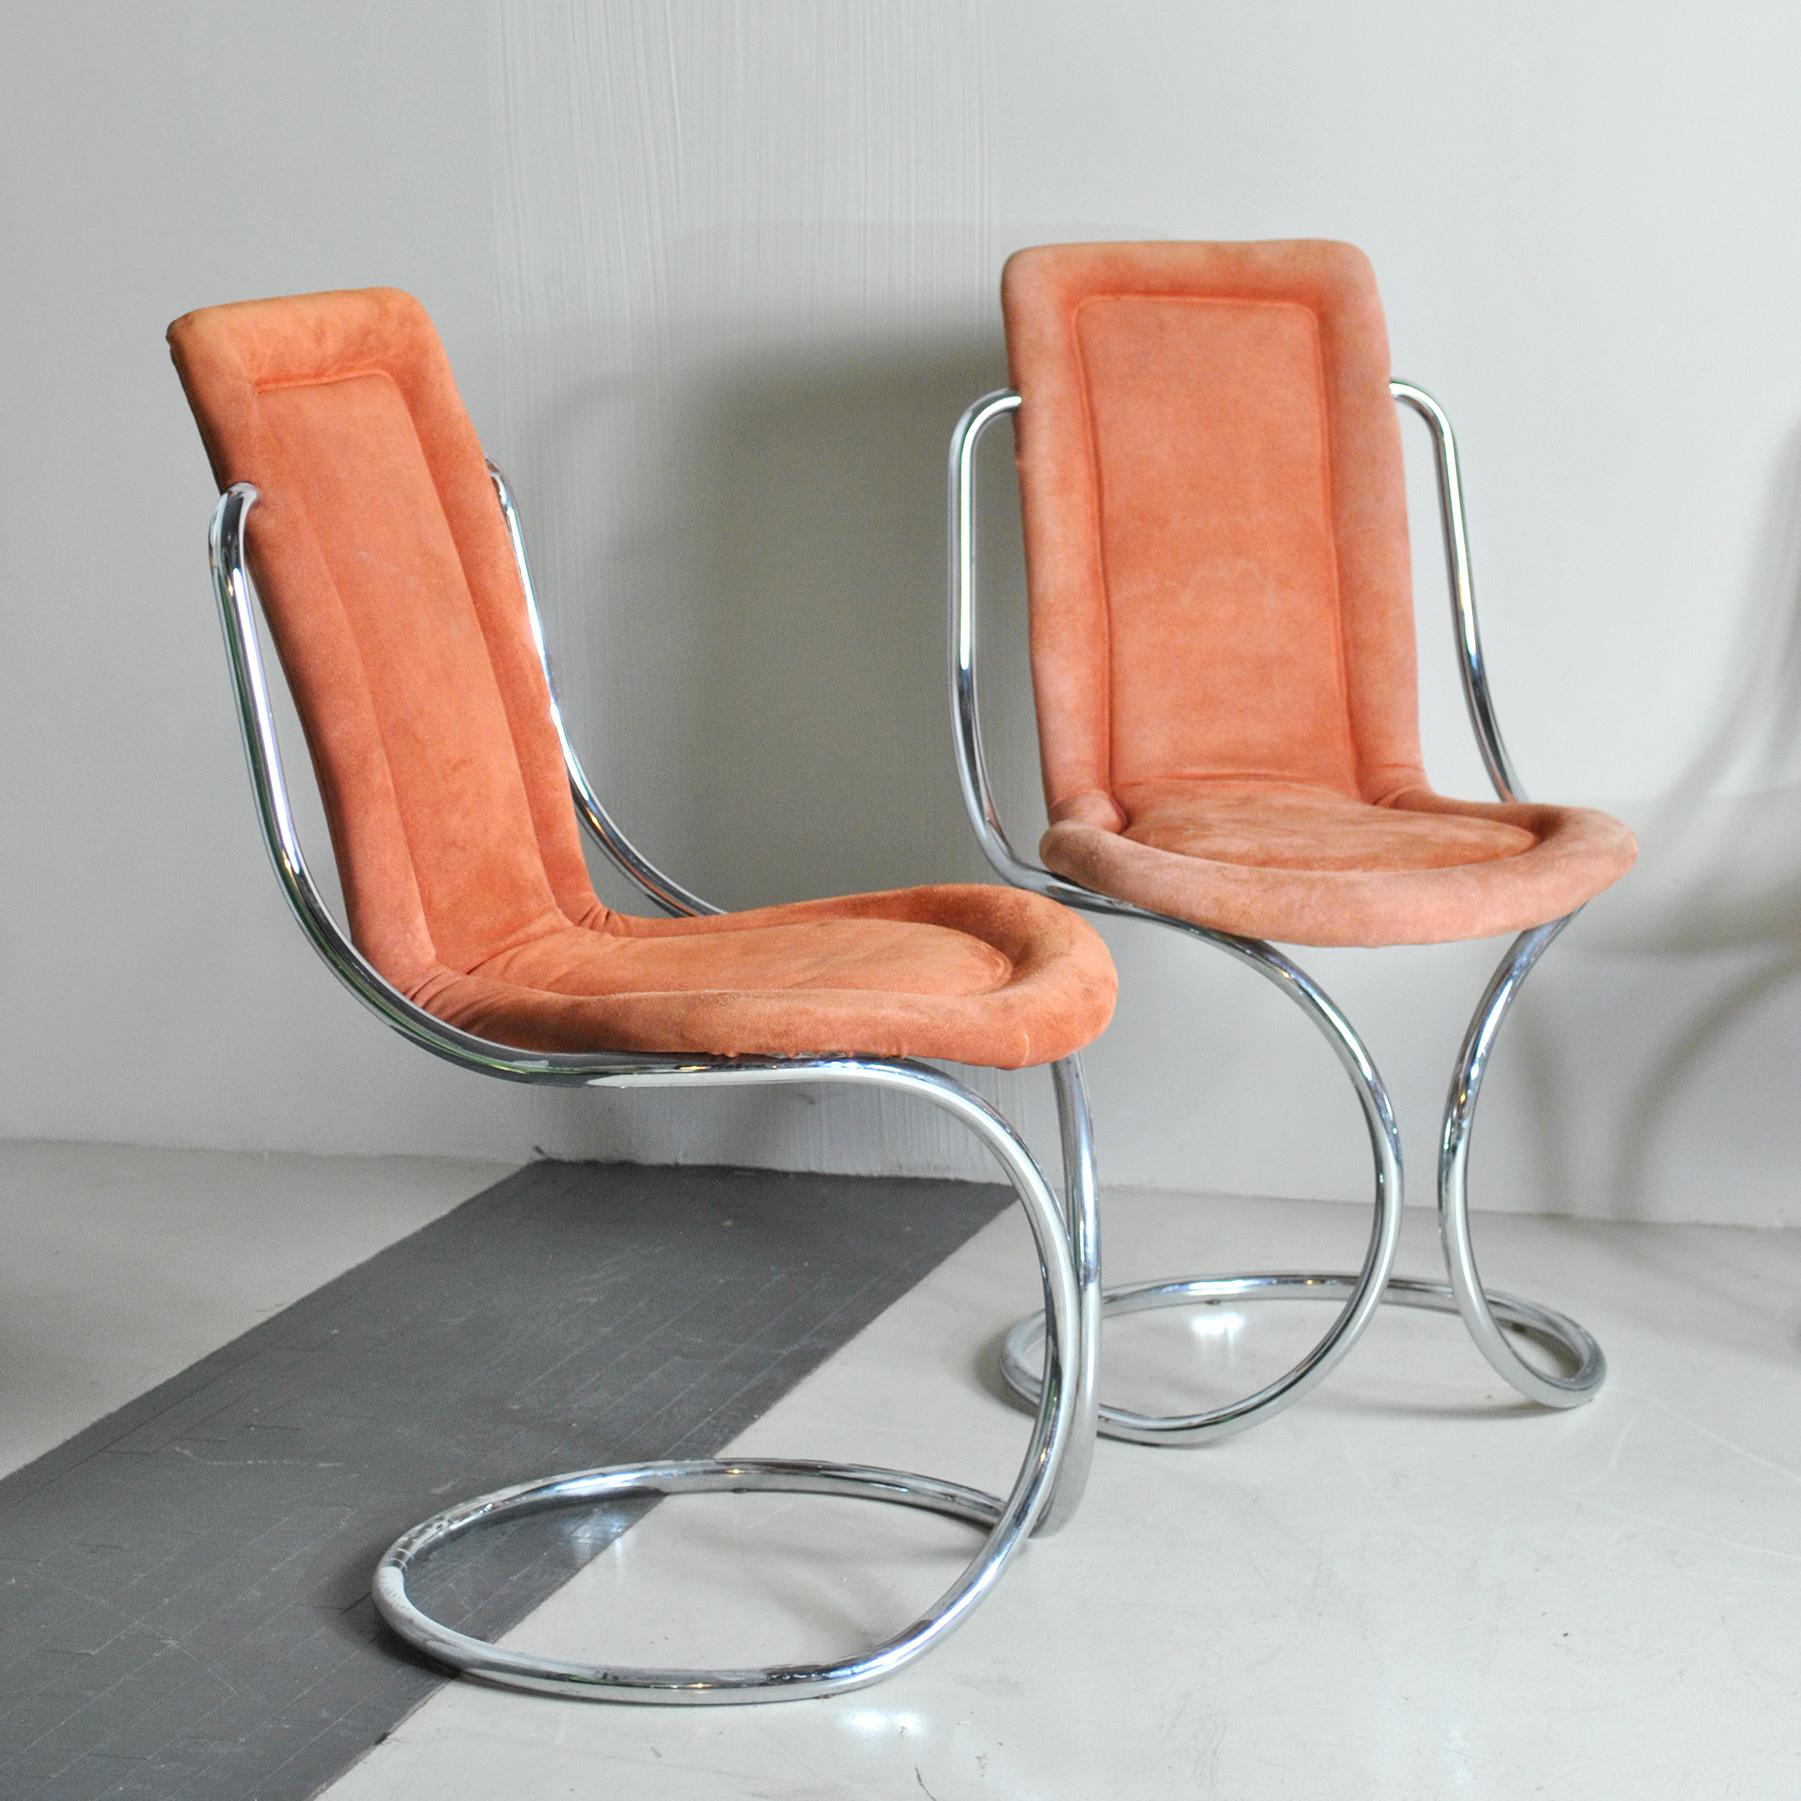 Steel Italian Midcentury Tecnosalotto Chairs 70's